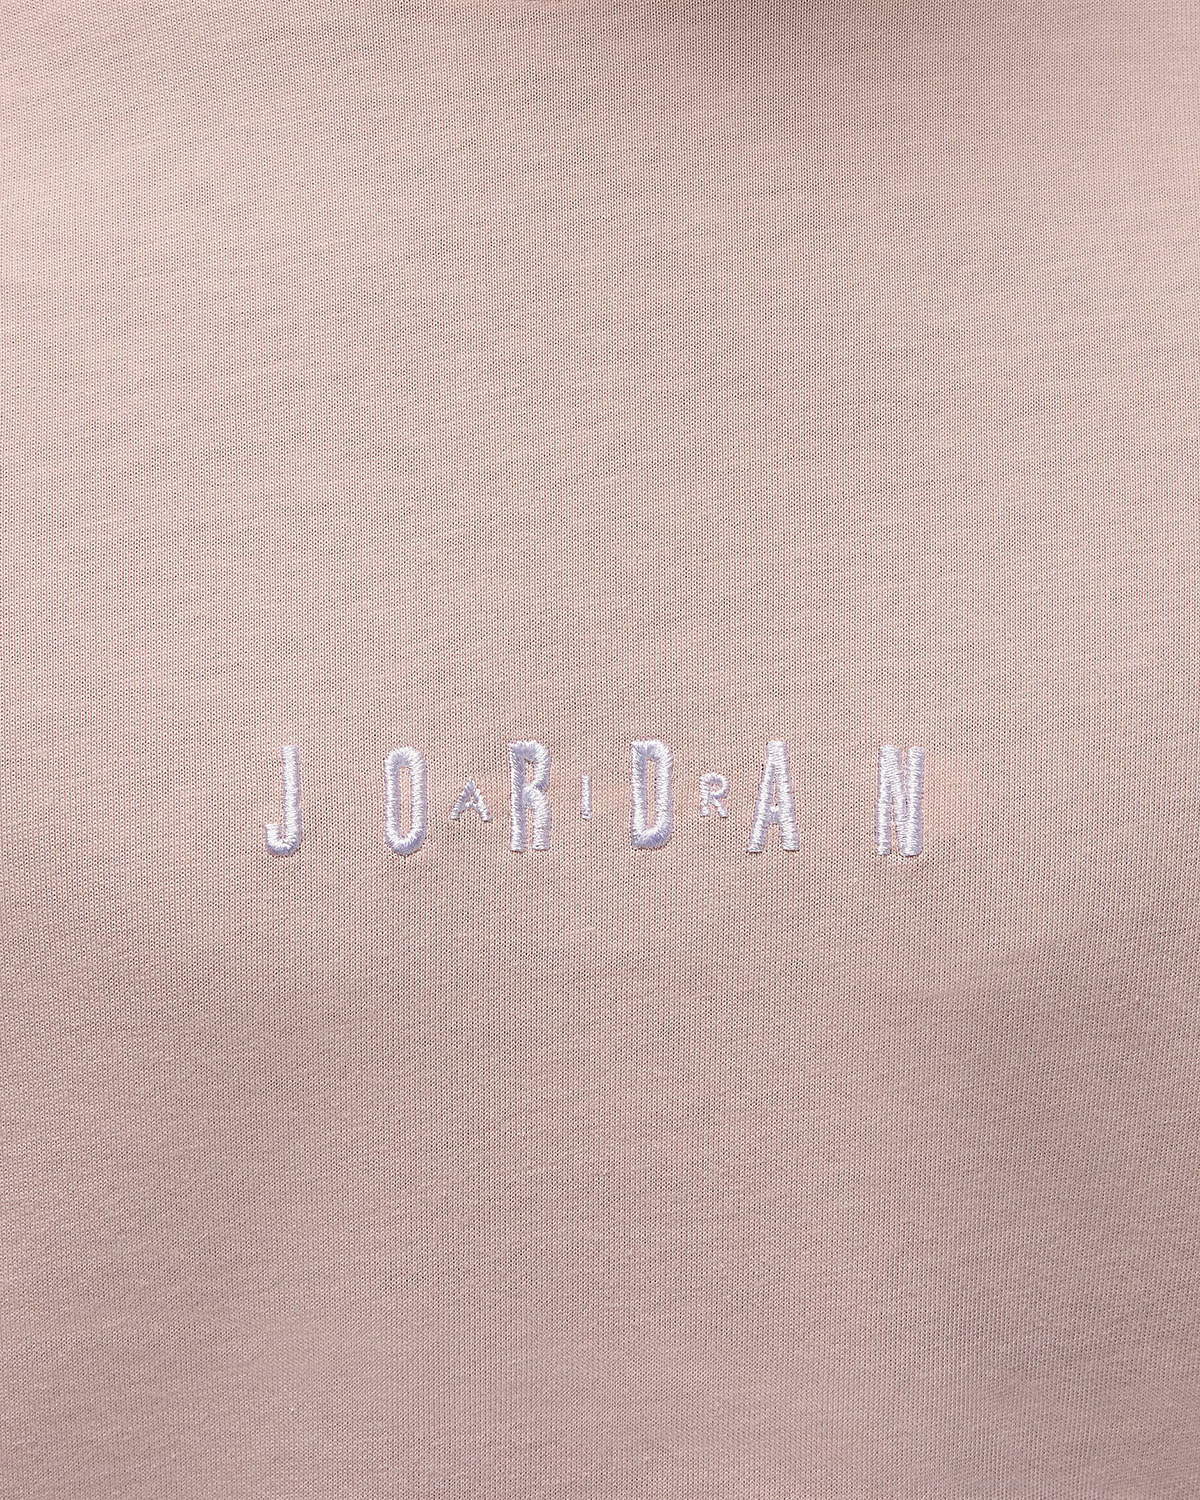 Jordan Air T Shirt Legend autographed 3